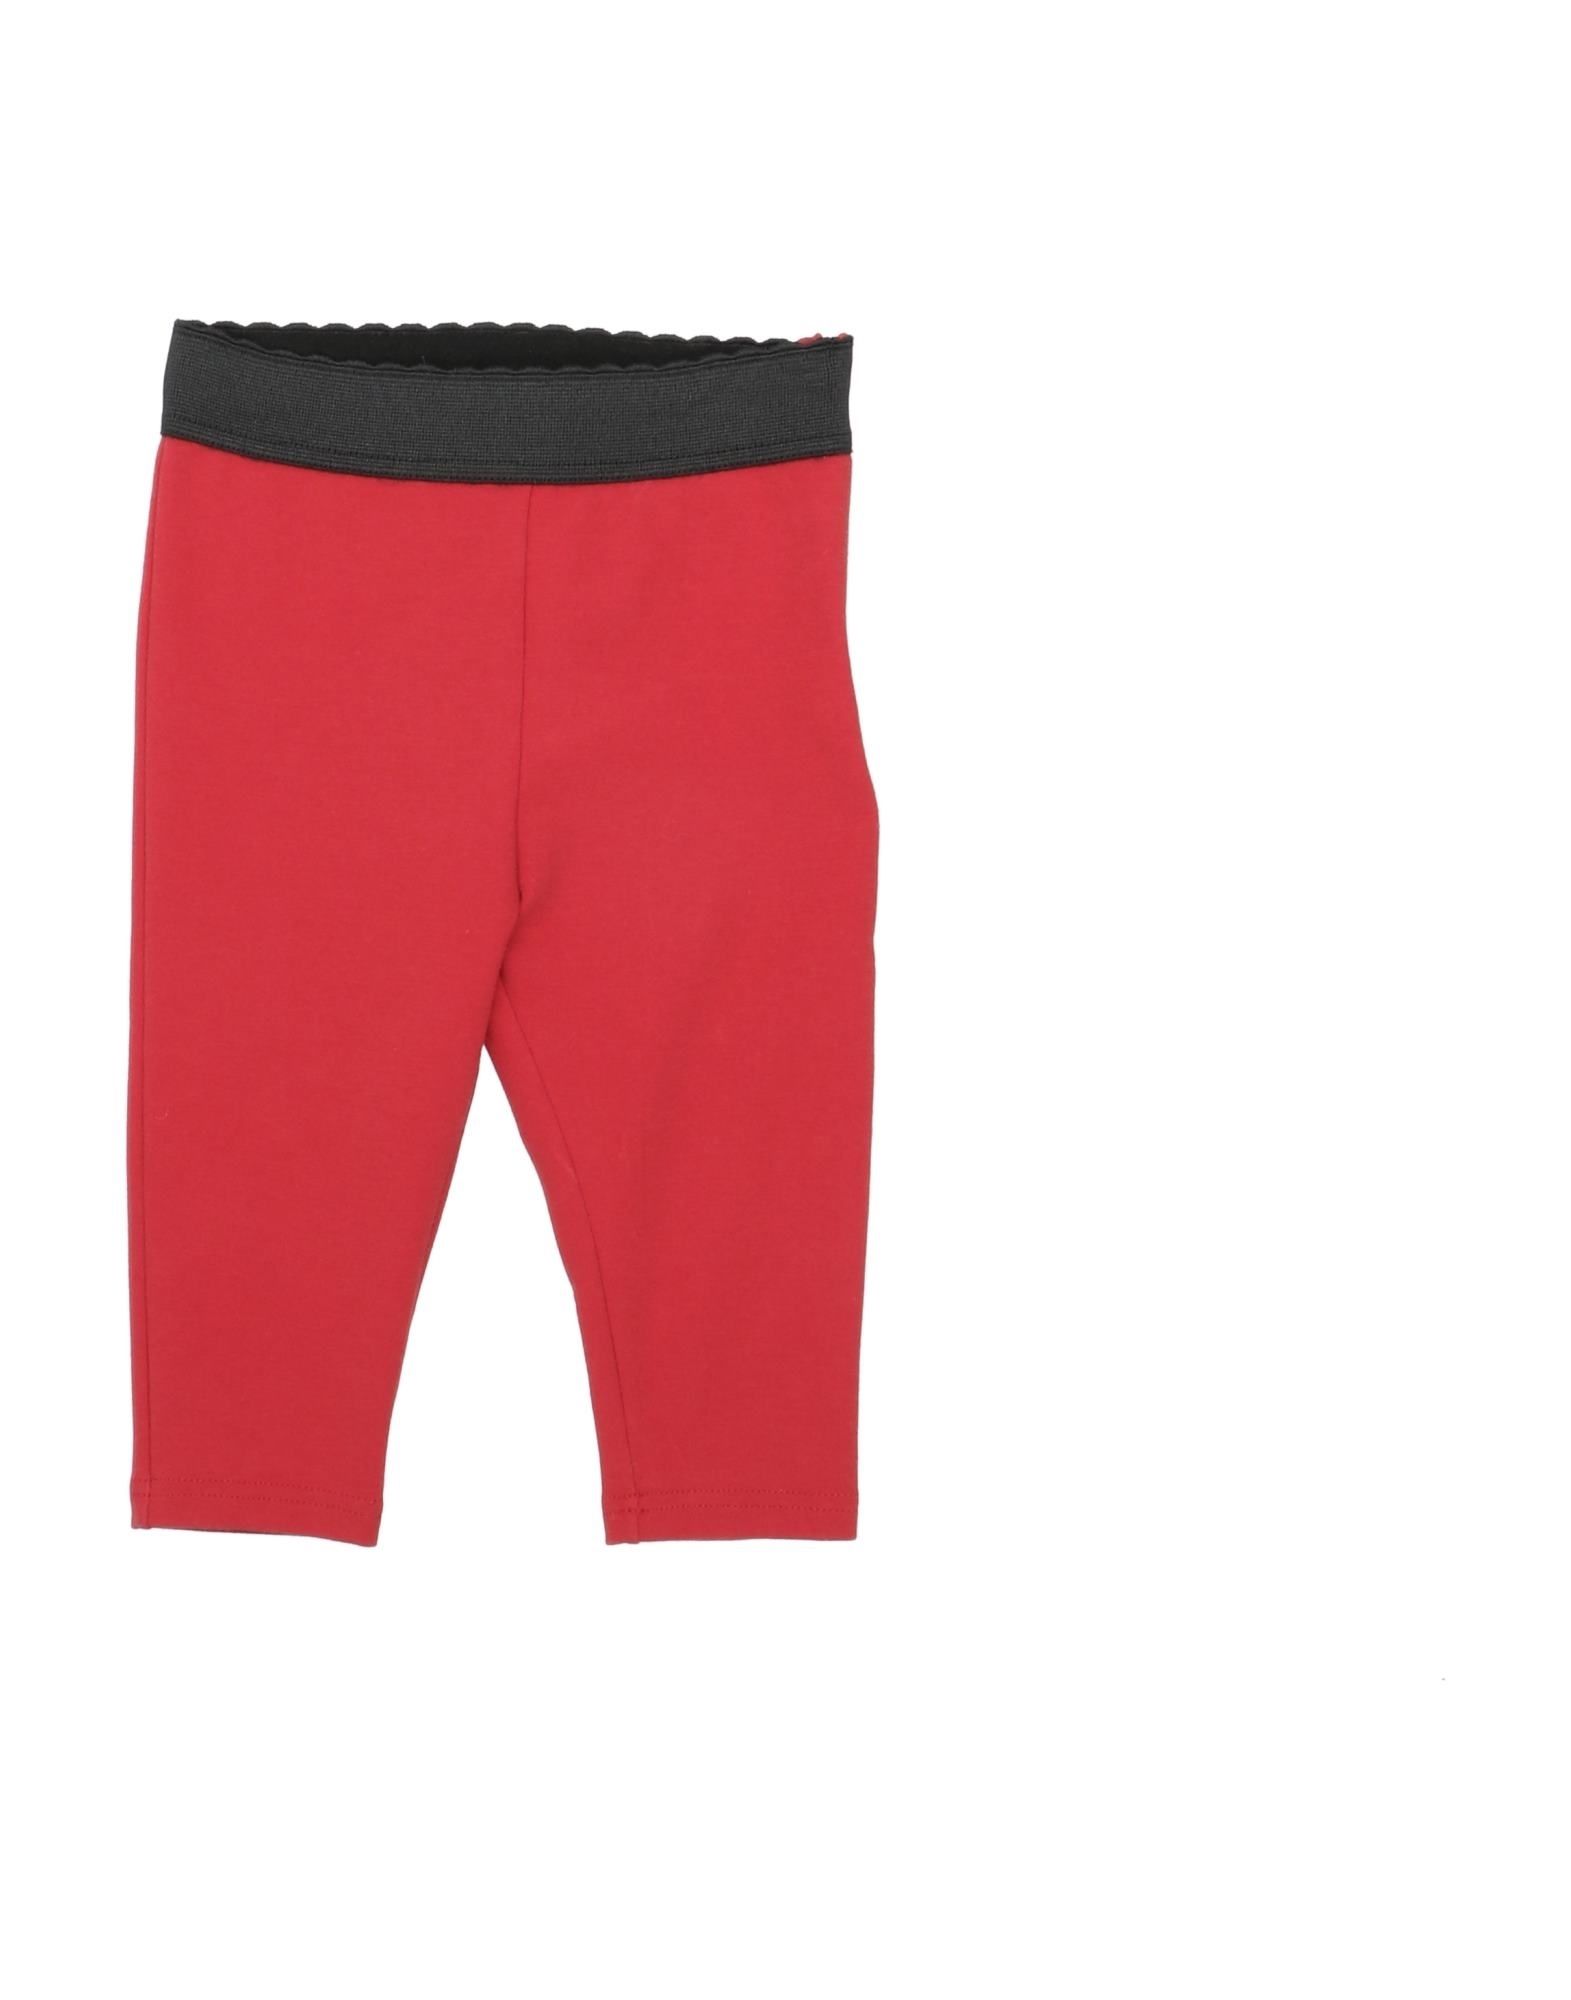 Dolce & Gabbana Kids' Leggings In Red